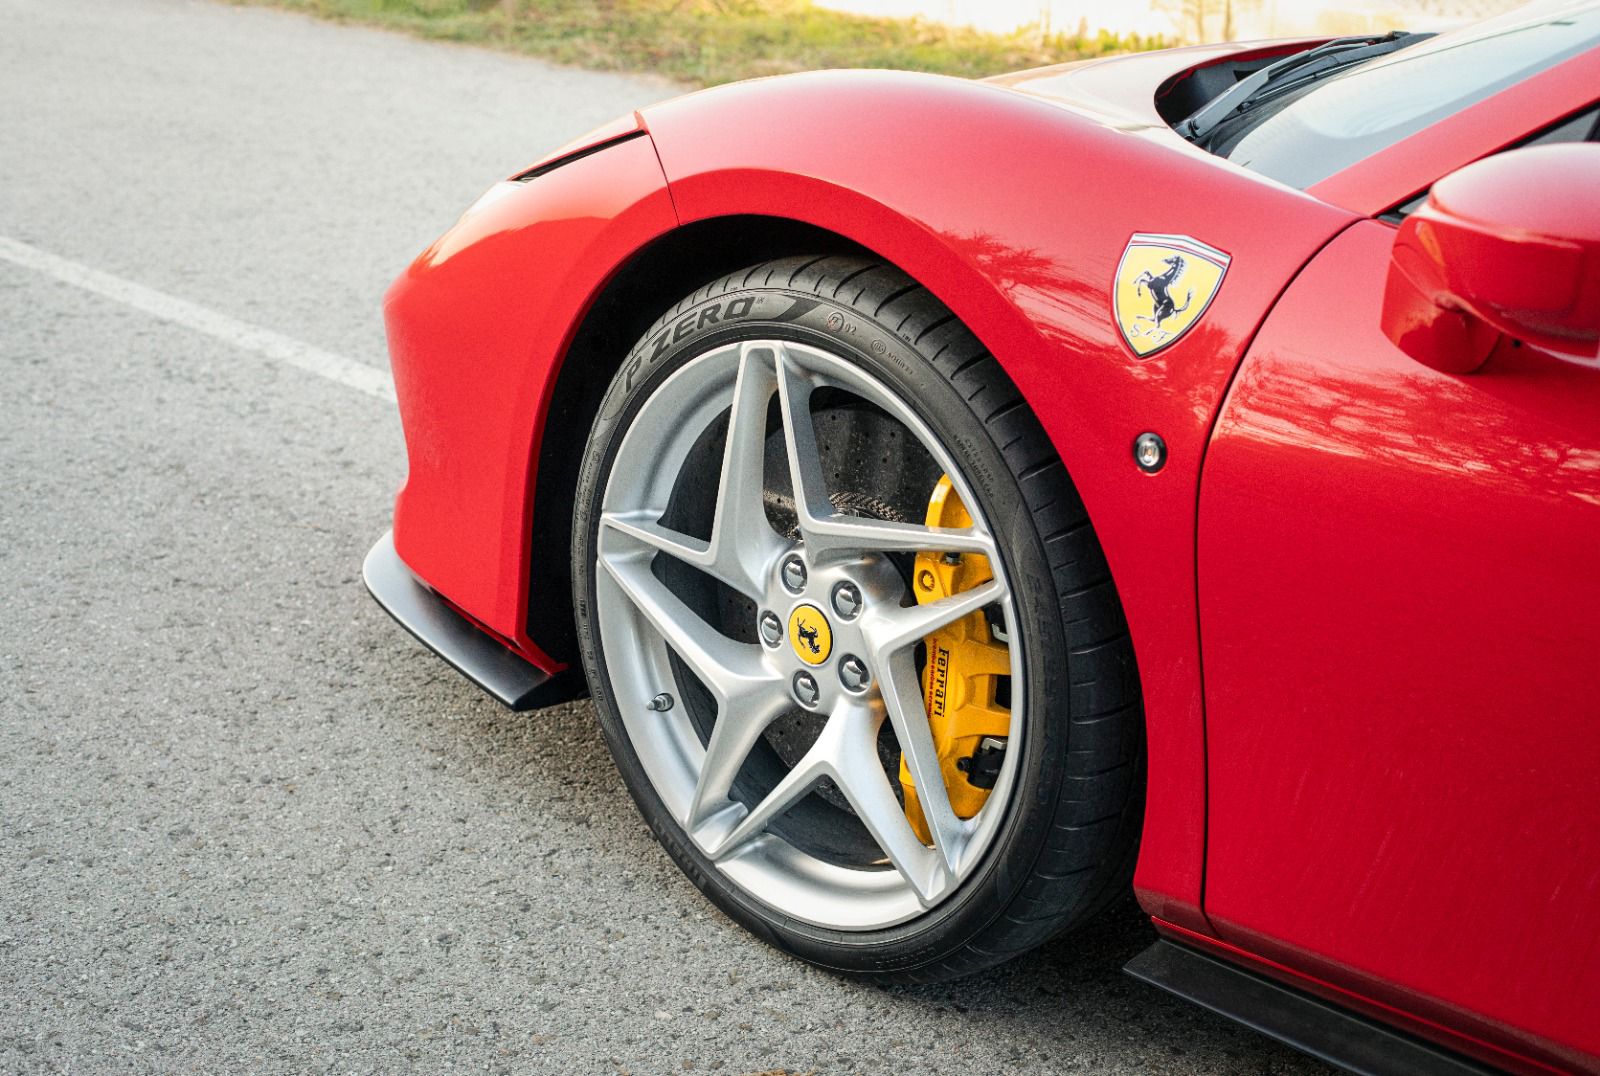 Ferrari F8 Spider Ferrar, Jancars, alquiler de coches de alta gama, deportivos y de lujo